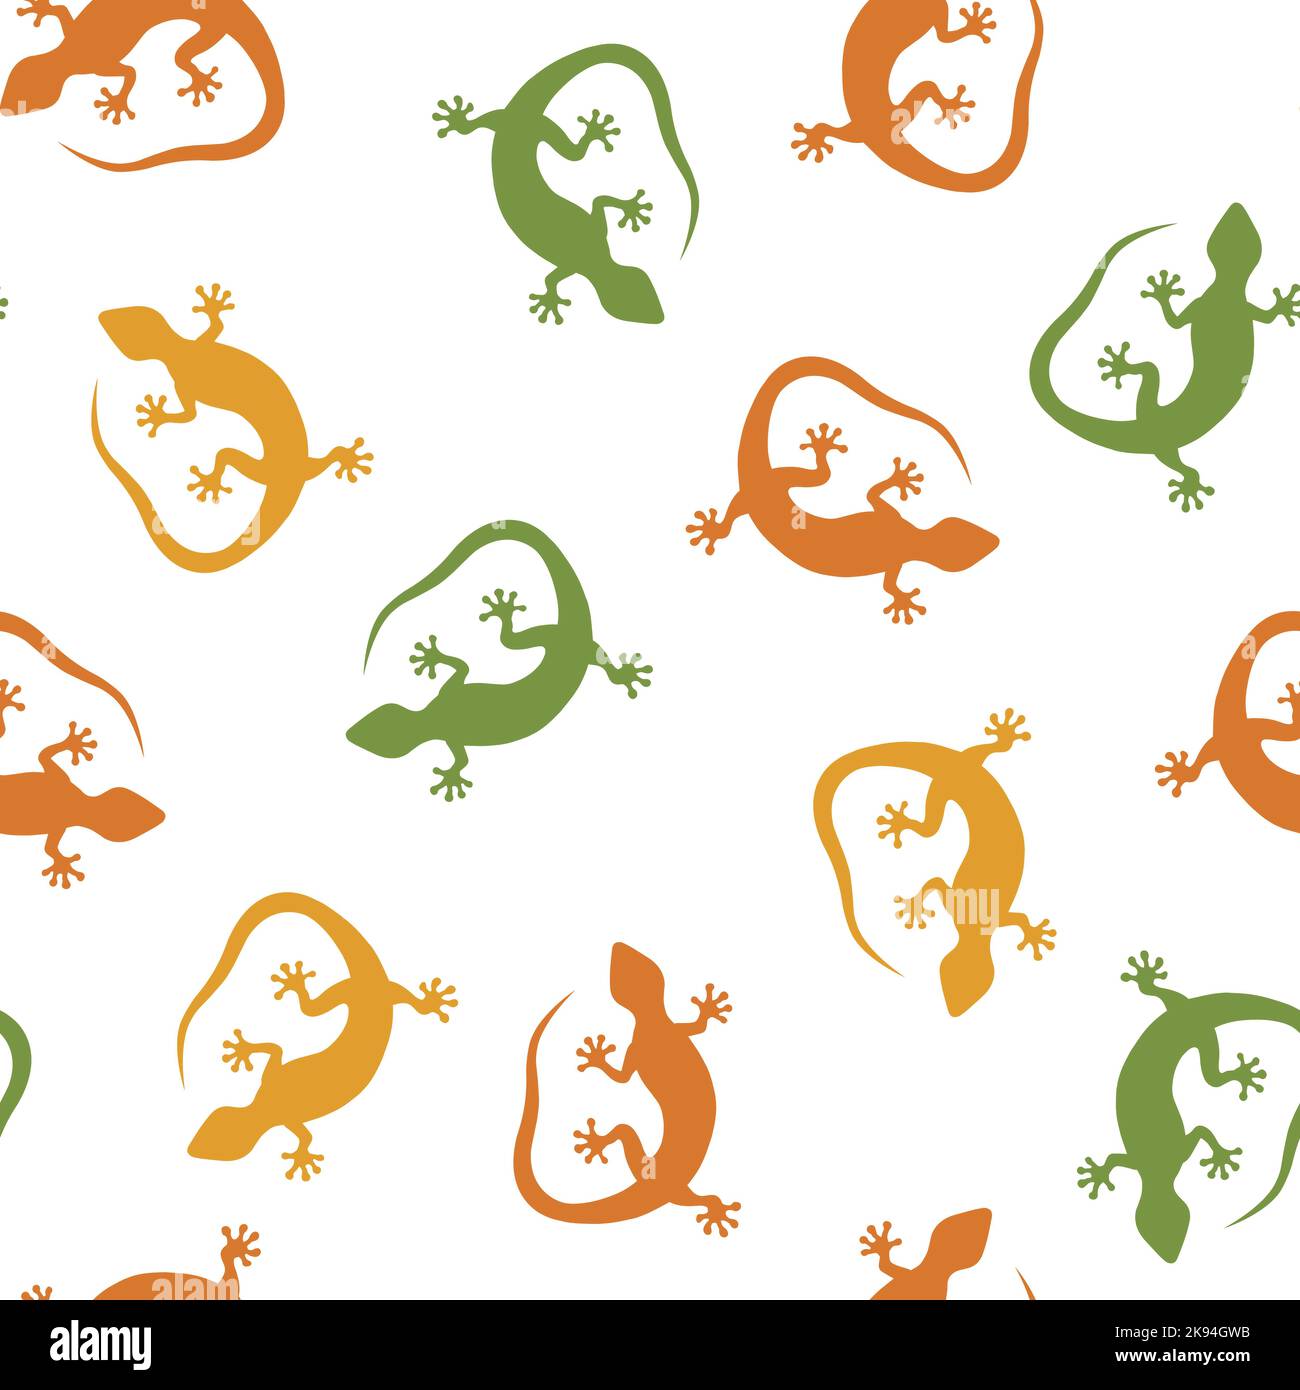 Verschiedene Farben Tokay gekko Nahtloses Muster. Wiederholendes Muster von handgezeichneten gekko-Eidechsen. Hintergrund mit grünen, gelben und orangefarbenen Elementen Stock Vektor